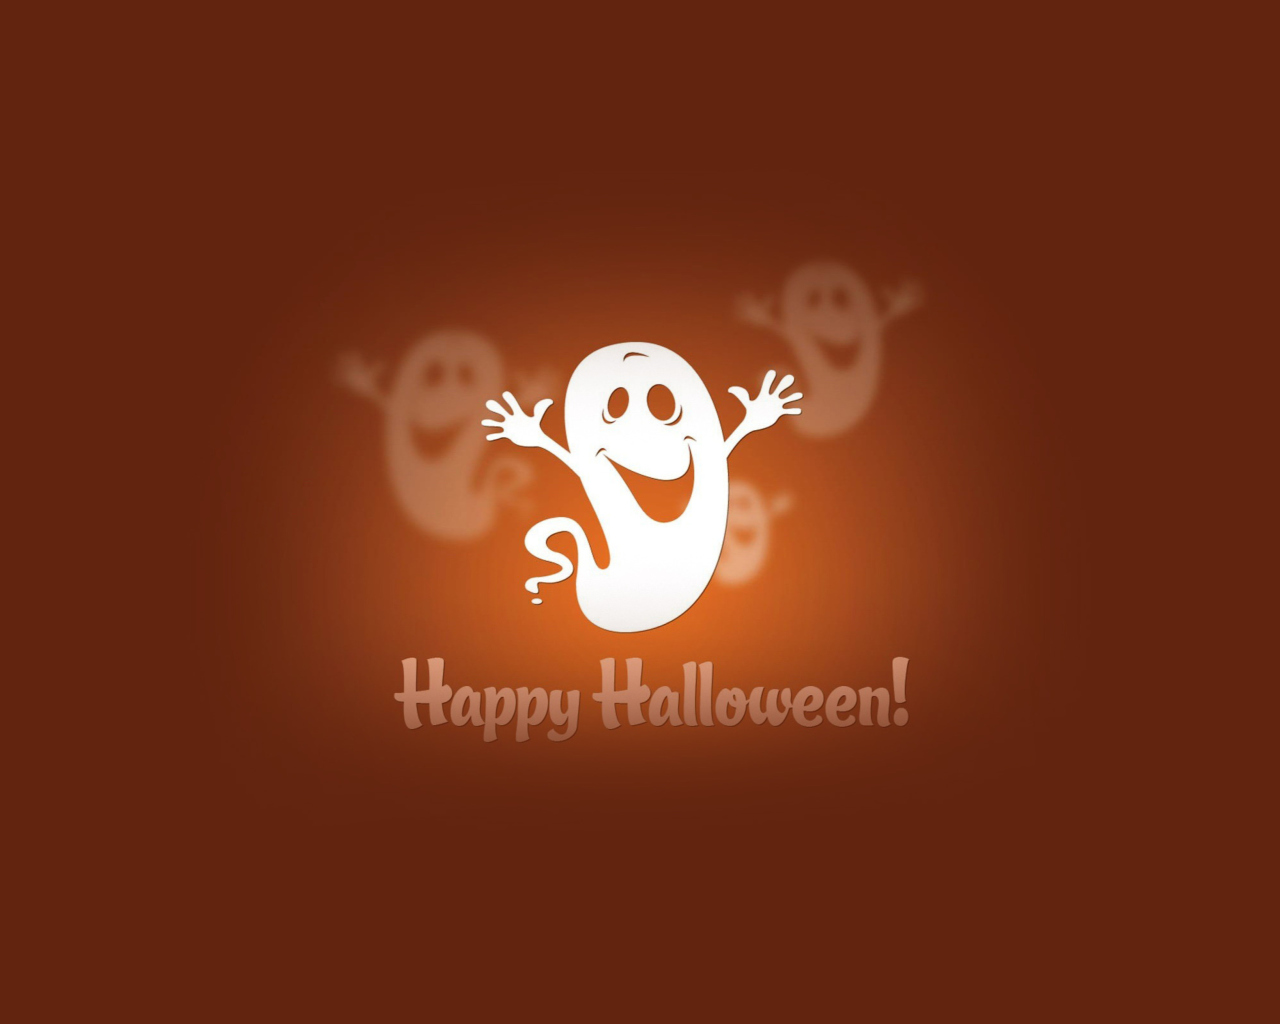 Happy Halloween wallpaper 1280x1024